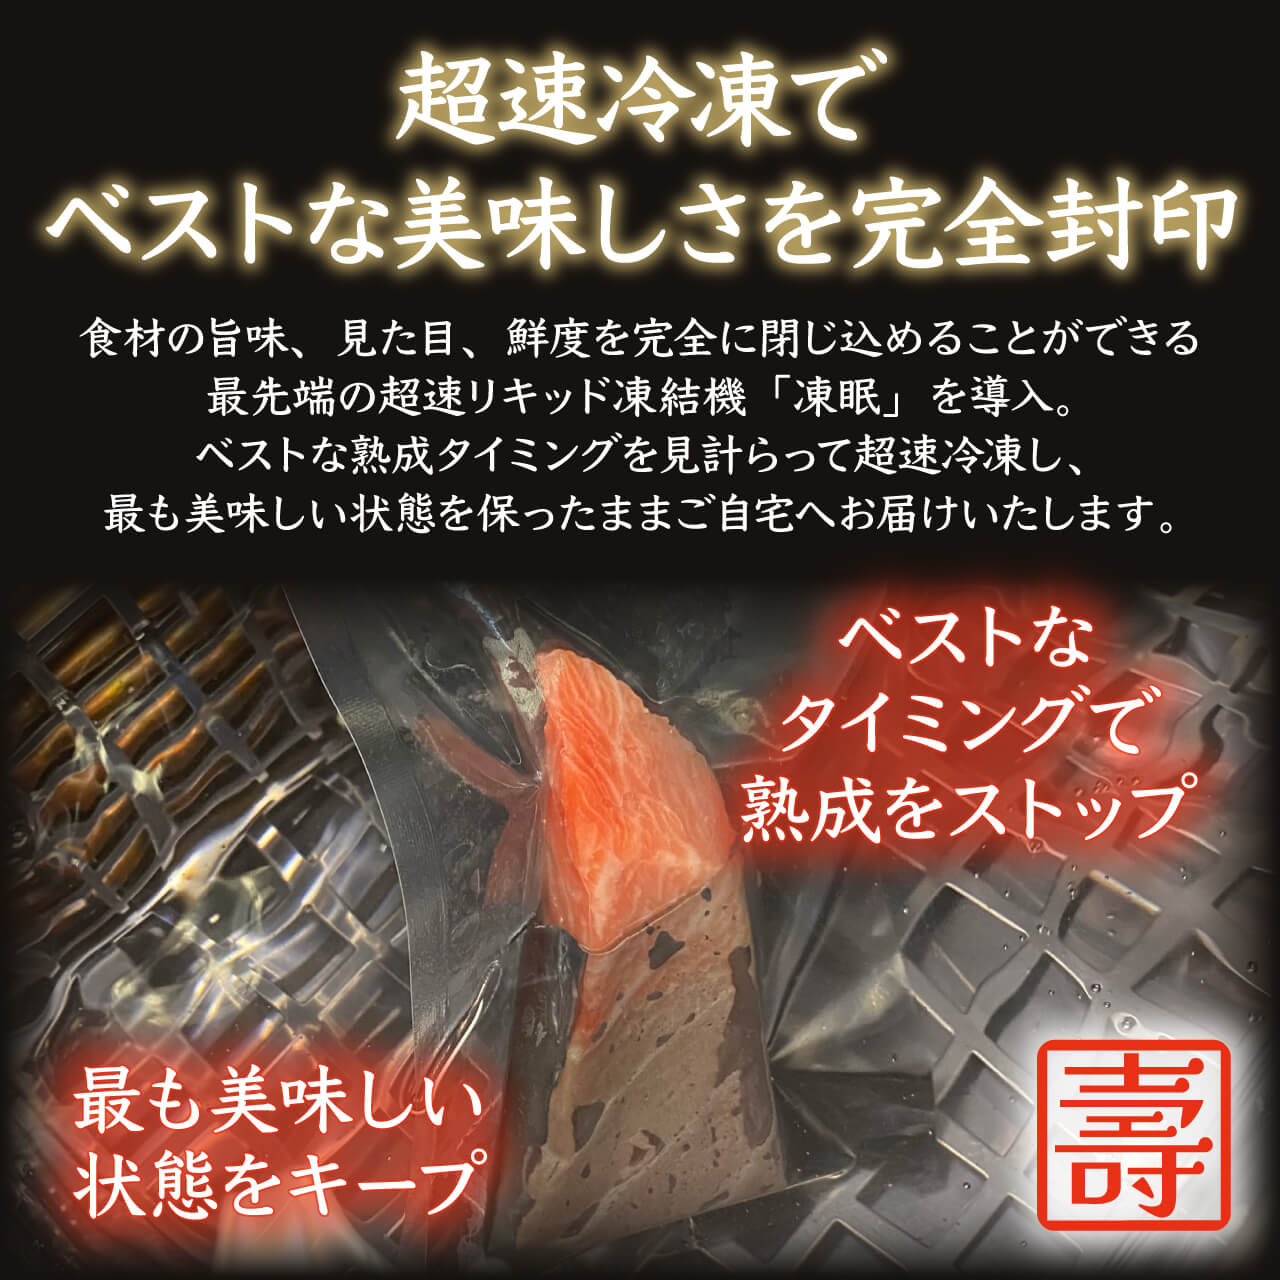 【コトブキウミサチコラボ】コトブキ海鮮丼&KIWAKOTO 器のBOTAN 水(青磁) とTSUBAKI霙(白結晶)  セット